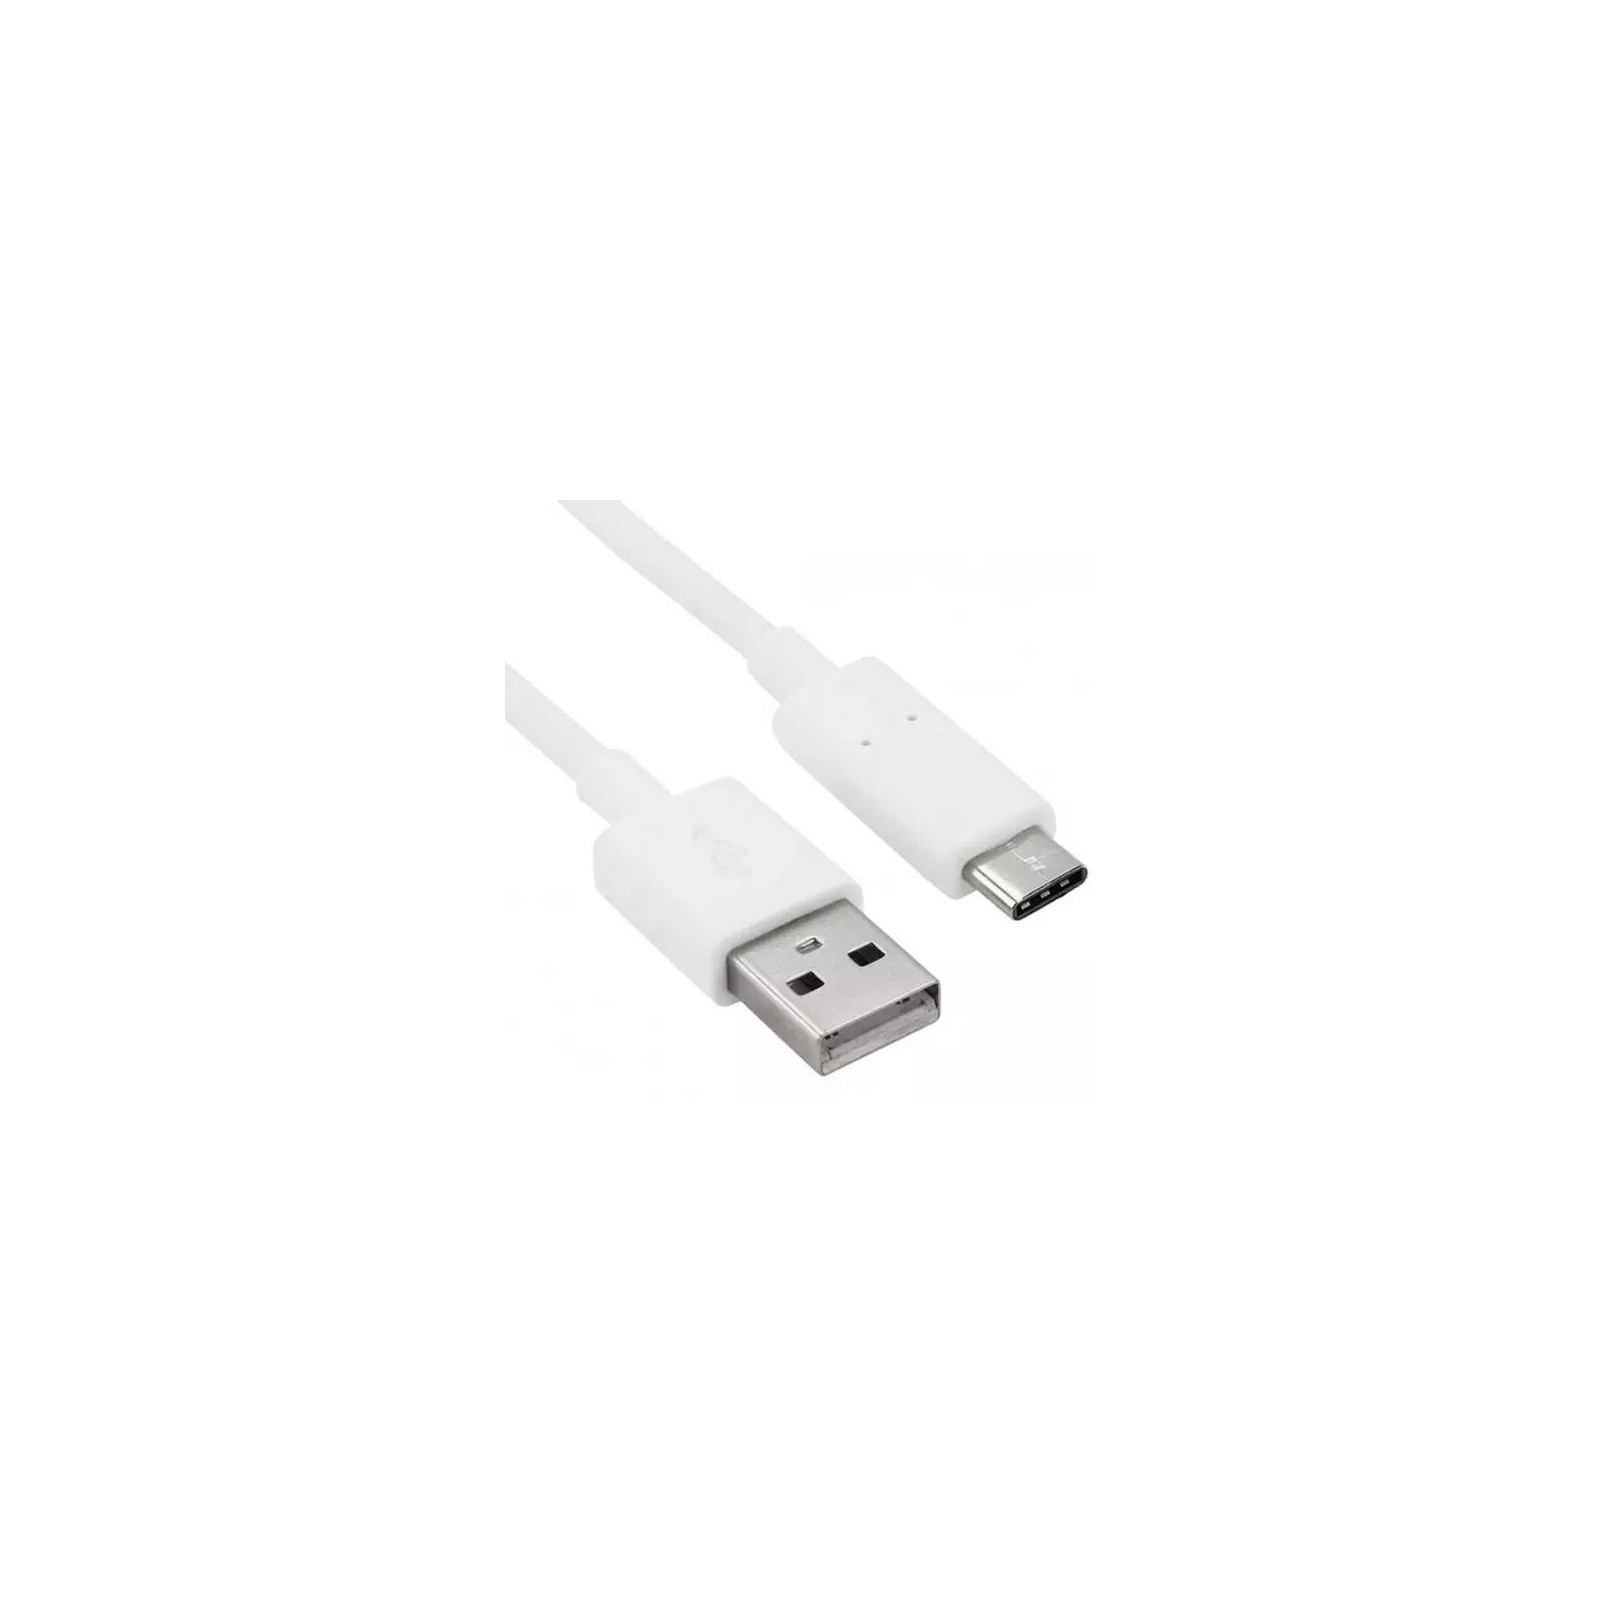 Зарядний пристрій 2E Wall Charger Dual USB-A 2.4A + cable USB-C White (2E-WC1USB2.1A-CC) зображення 4